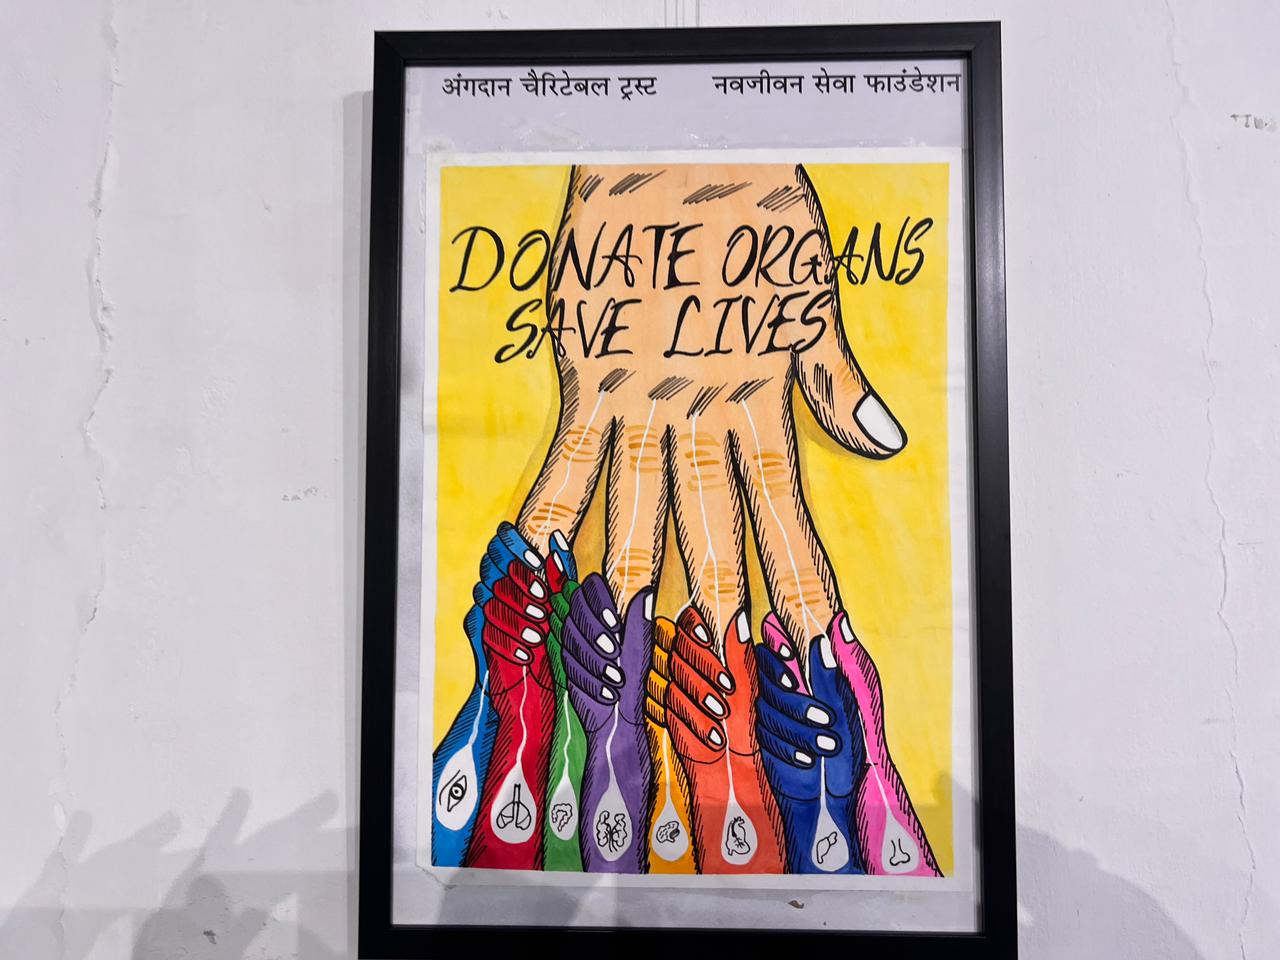 વીર નર્મદ દક્ષિણ ગુજરાત યુનિવર્સિટીના વિદ્યાર્થીઓએ એક જીવથી અનેક જીવ બચાવવાના ઉદ્દેશથી અંગદાન કરવા માટે પ્રણ લીધો